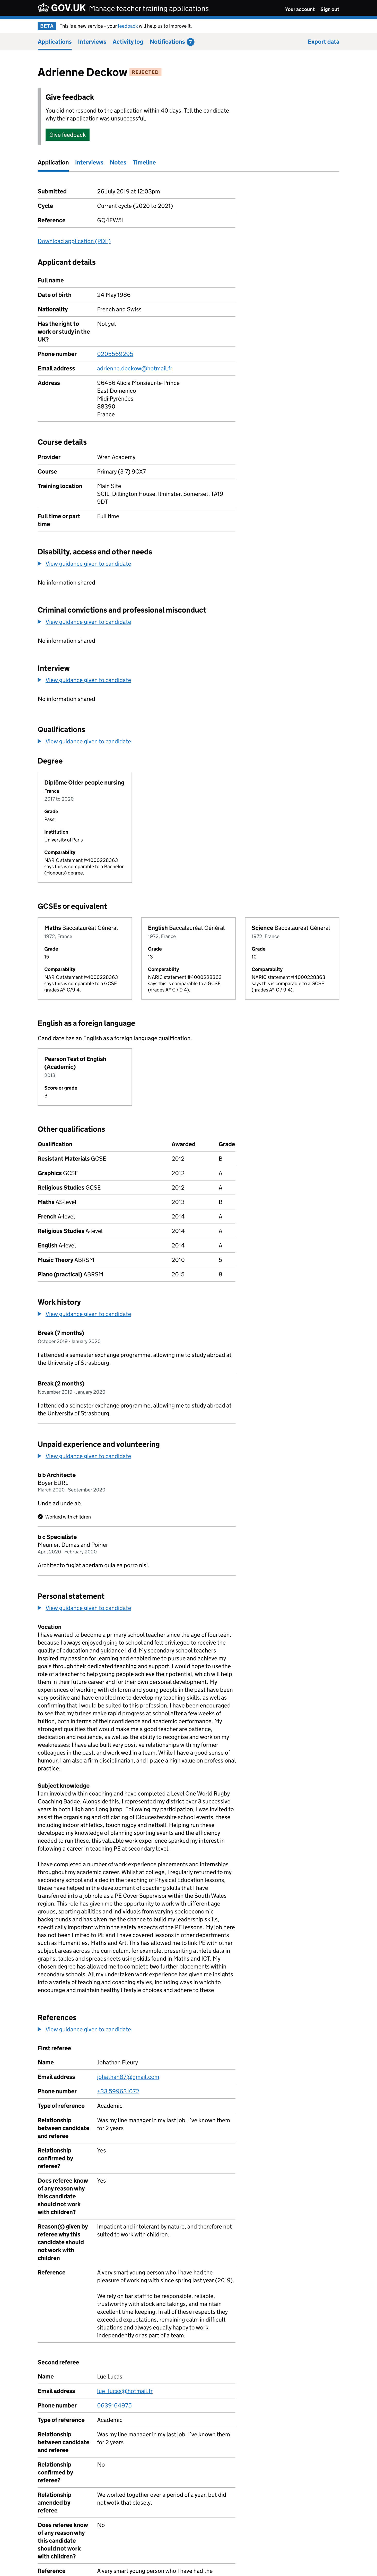 Screenshot of application details after change.